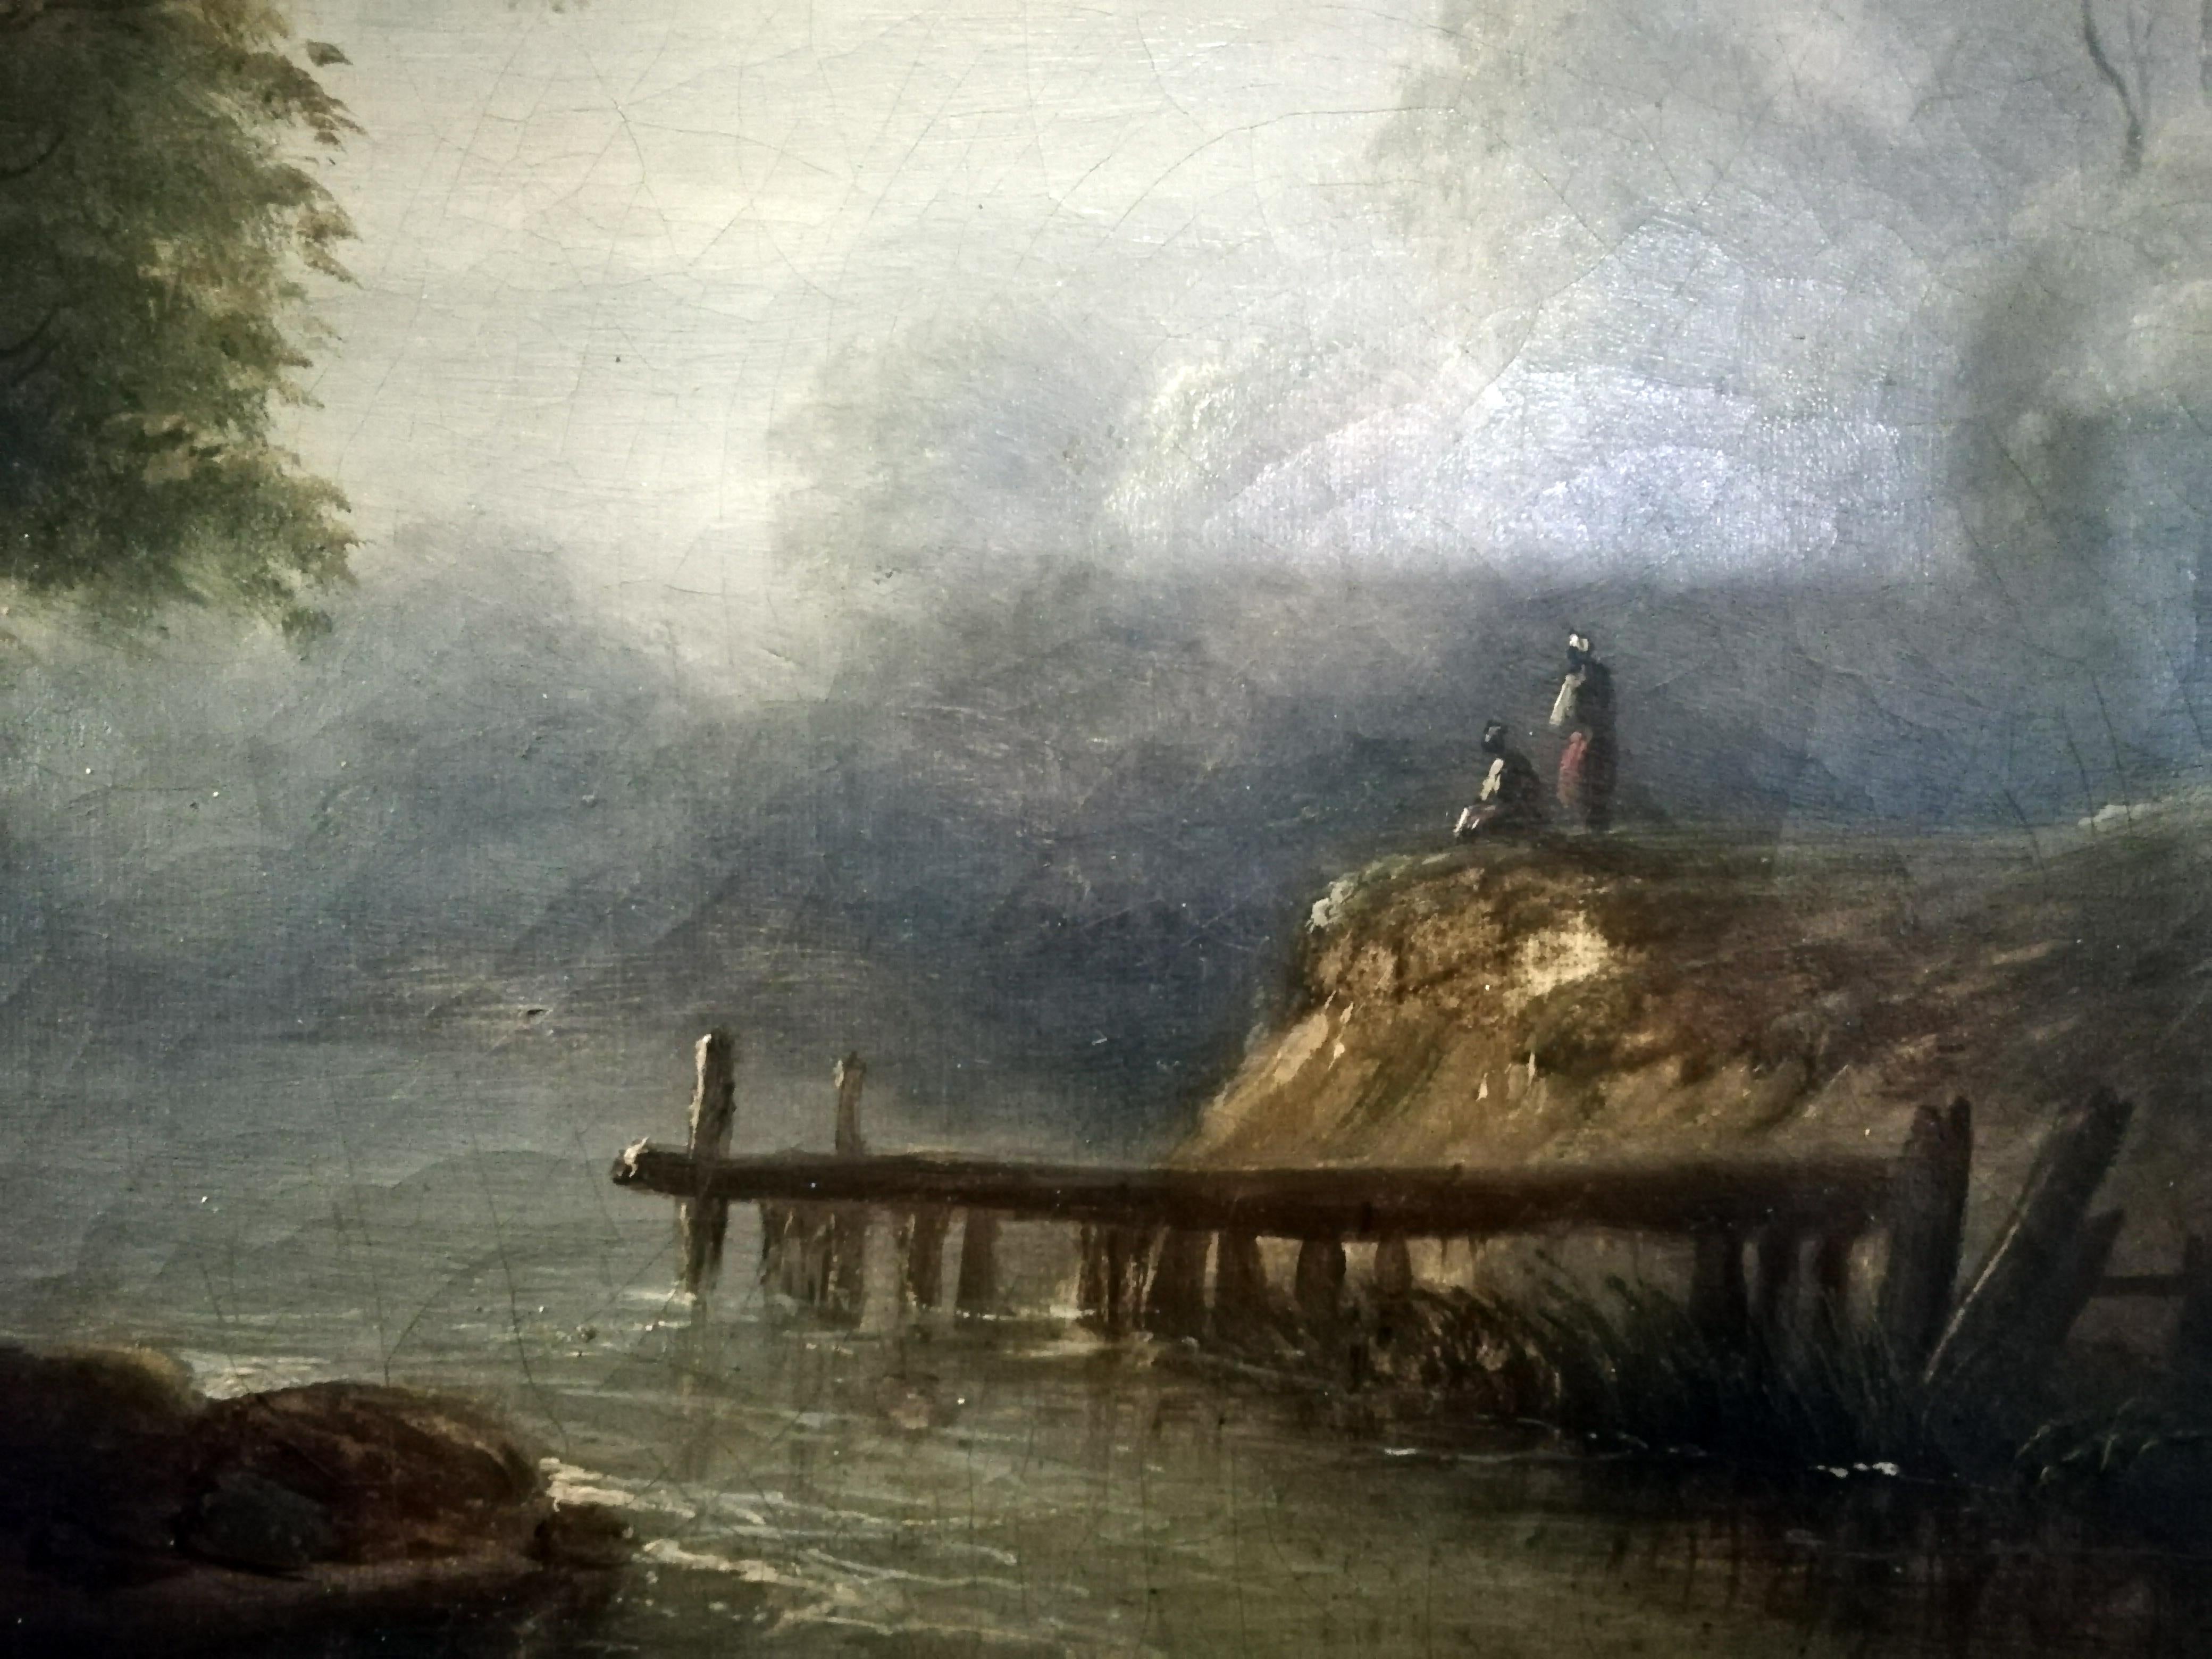 Ein schönes Öl auf Leinwand des französischen Künstlers Jean-Victor Bertin, das eine Landschaft mit Bäumen, Frauen, Bauern, einem Fluss und einem Holzsteg zeigt.

Öl auf Leinwand. Signiert unten links, um 1810. Mit antikem Rahmen.

Maße: 40.5 x